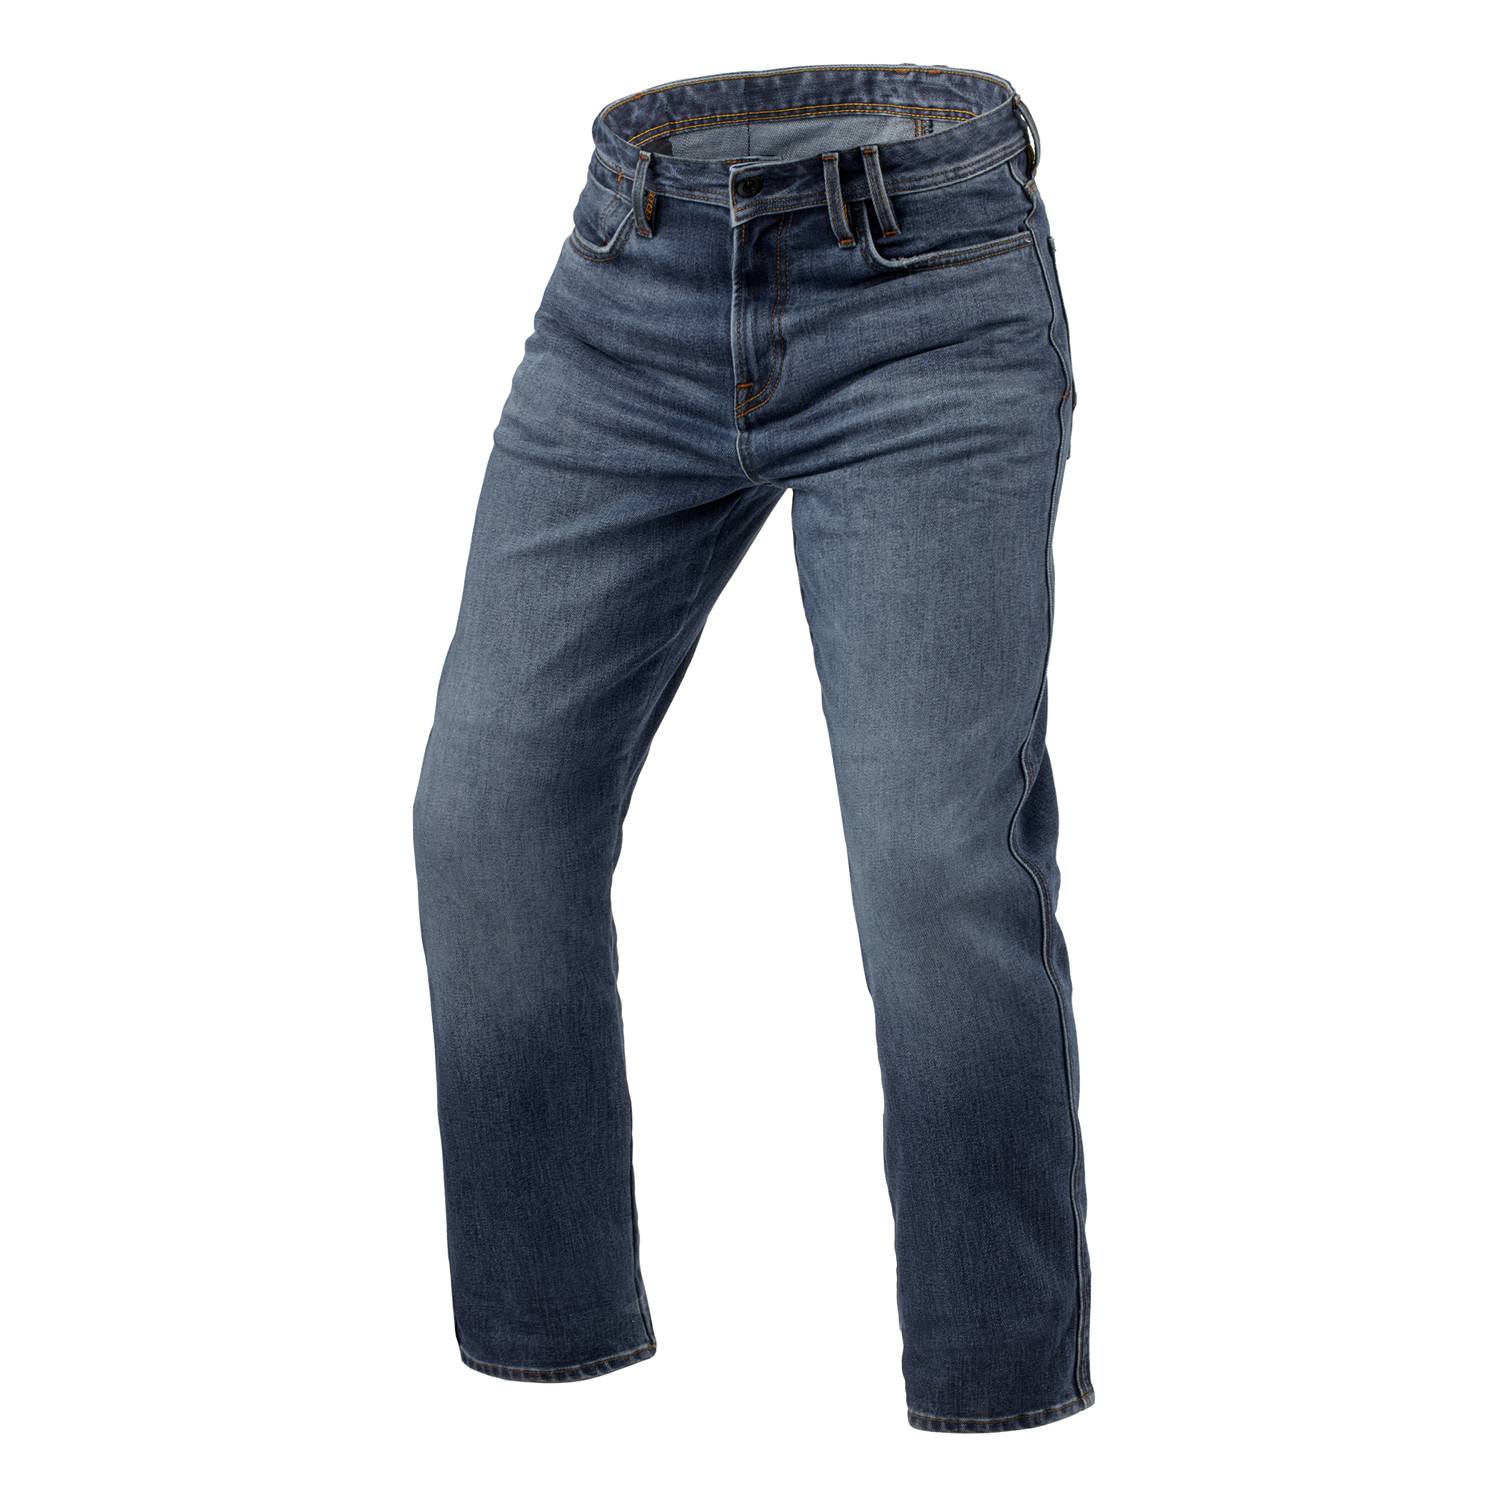 Image of REV'IT! Jeans Lombard 3 RF Medium Blue Stone L36 Motorcycle Jeans Size L36/W31 EN